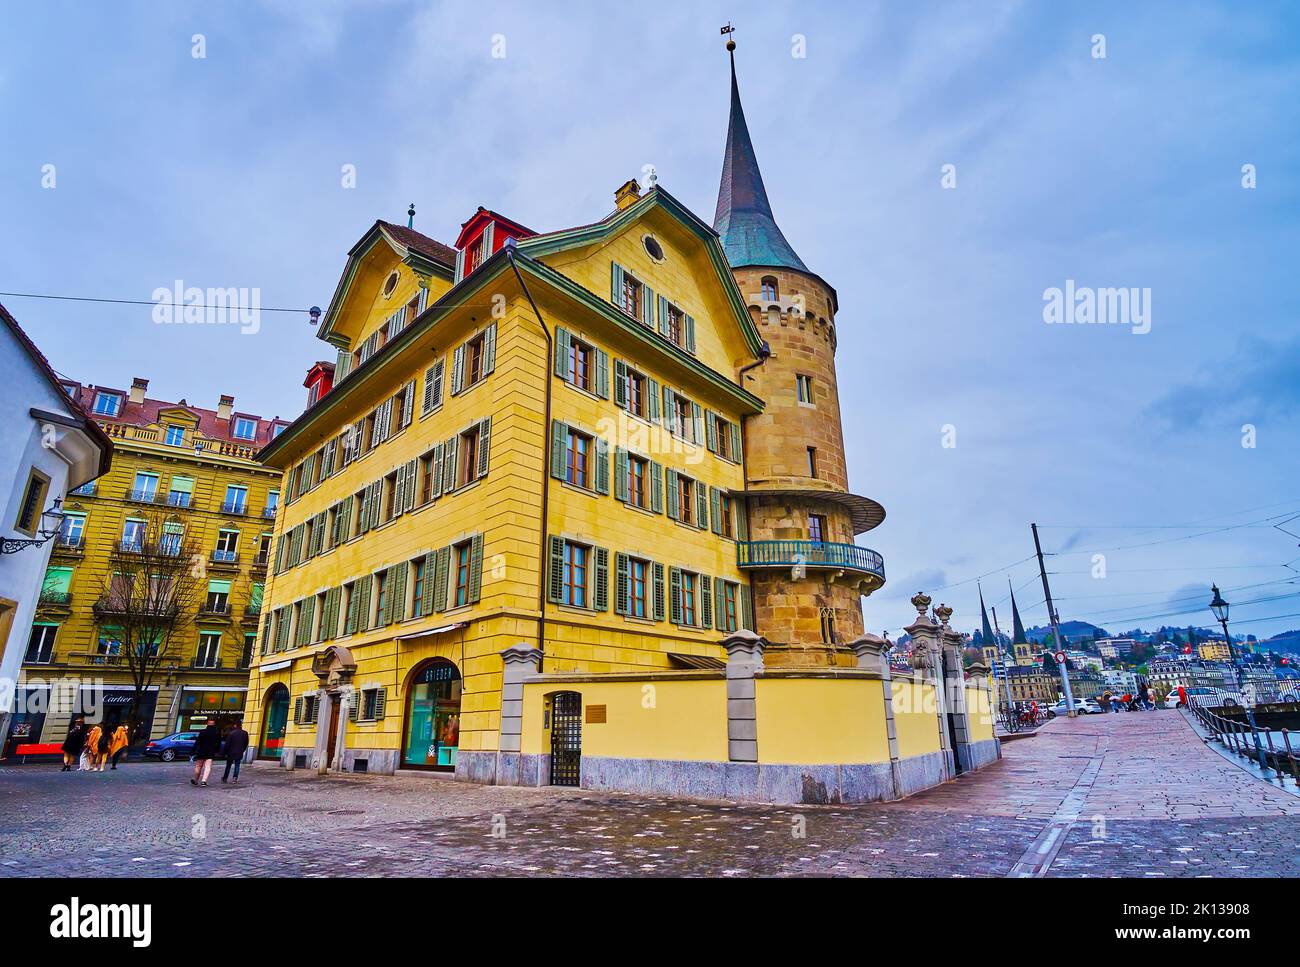 LUZERN, SCHWEIZ - 30. MÄRZ 2022: Historisches Gebäude mit Turm am Rathausquai-Ufer des Reuss, am 30. März in Luzern, Schweiz Stockfoto